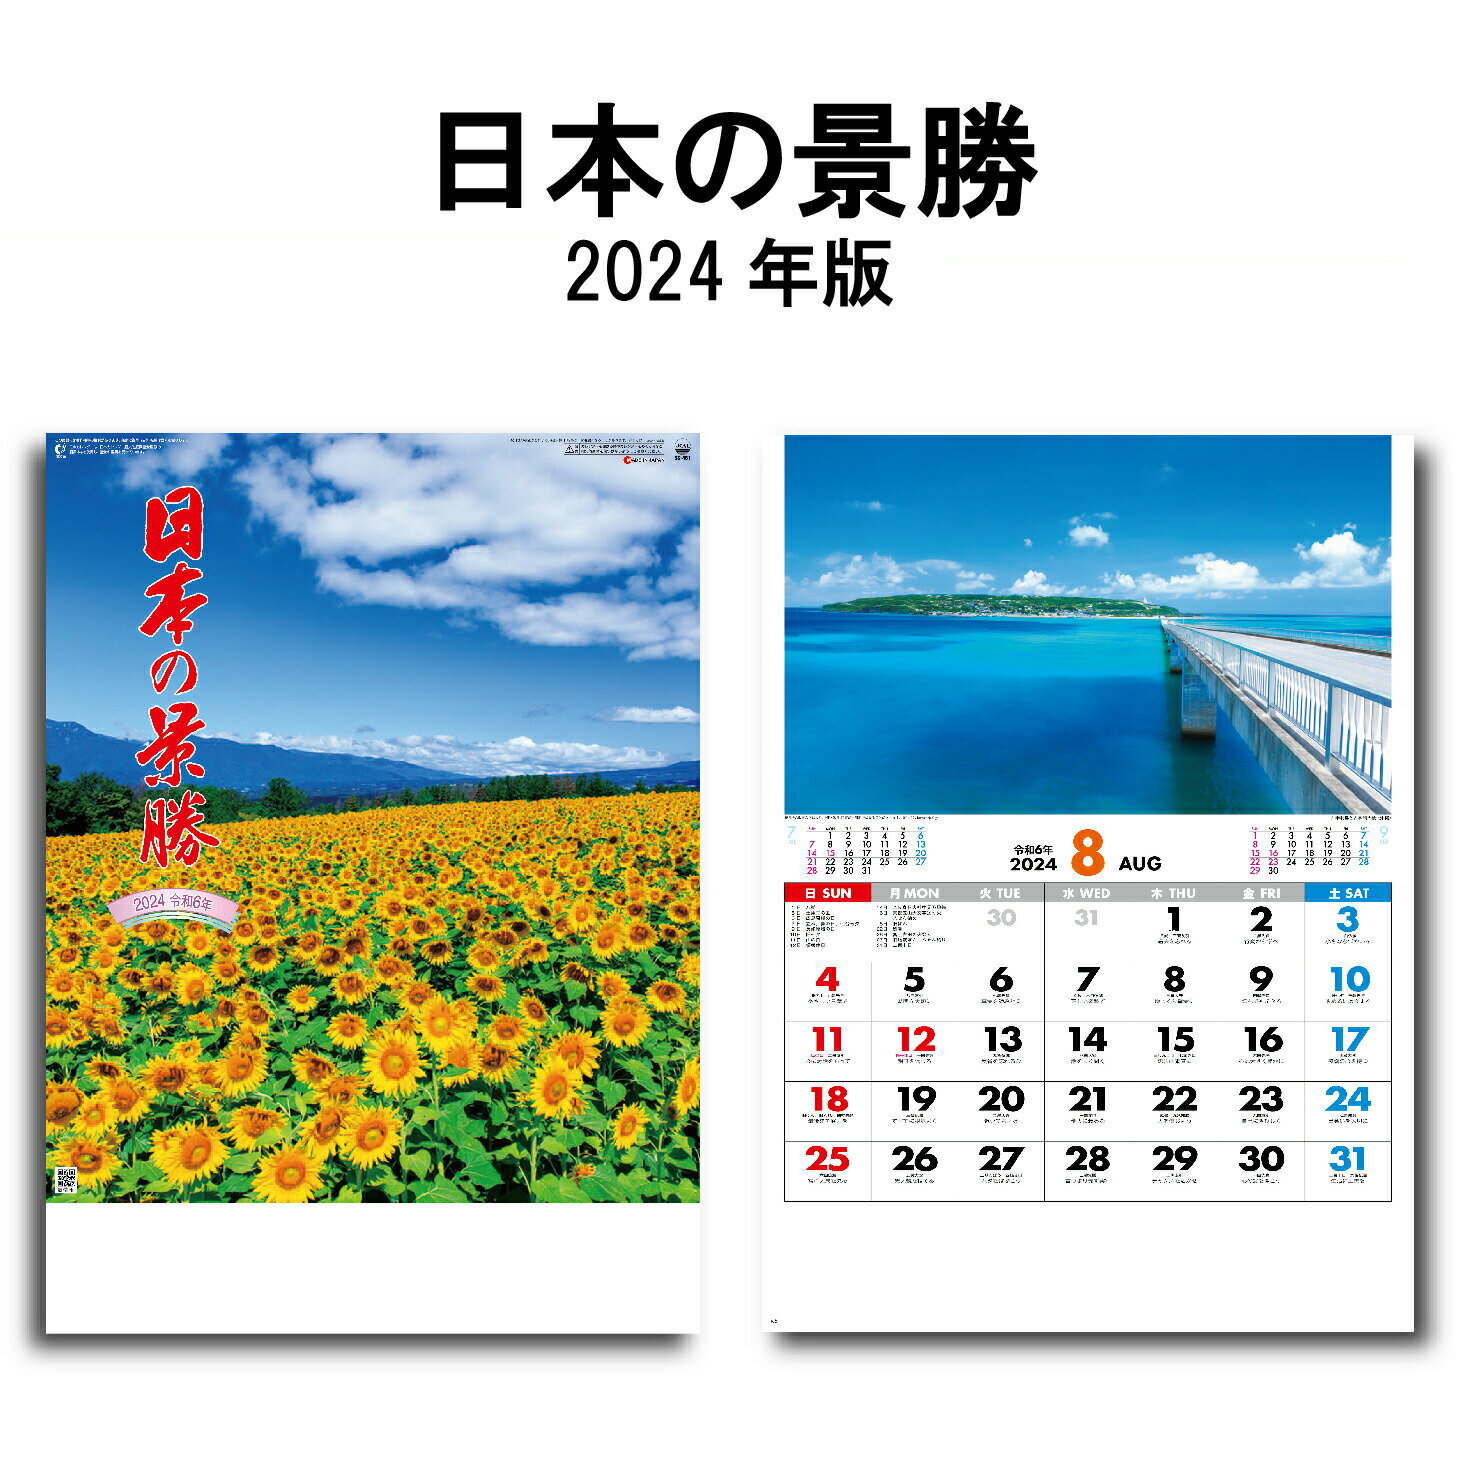 カレンダー 2024年 壁掛け ジャパン・ナイトシーン SG224 カレンダー 2024 壁掛け 2024年版 壁掛けカレンダー 46/4切 おしゃれ スケジュール 便利 日本 夜景 景観 自然 風景 写真 四季 季節 237876